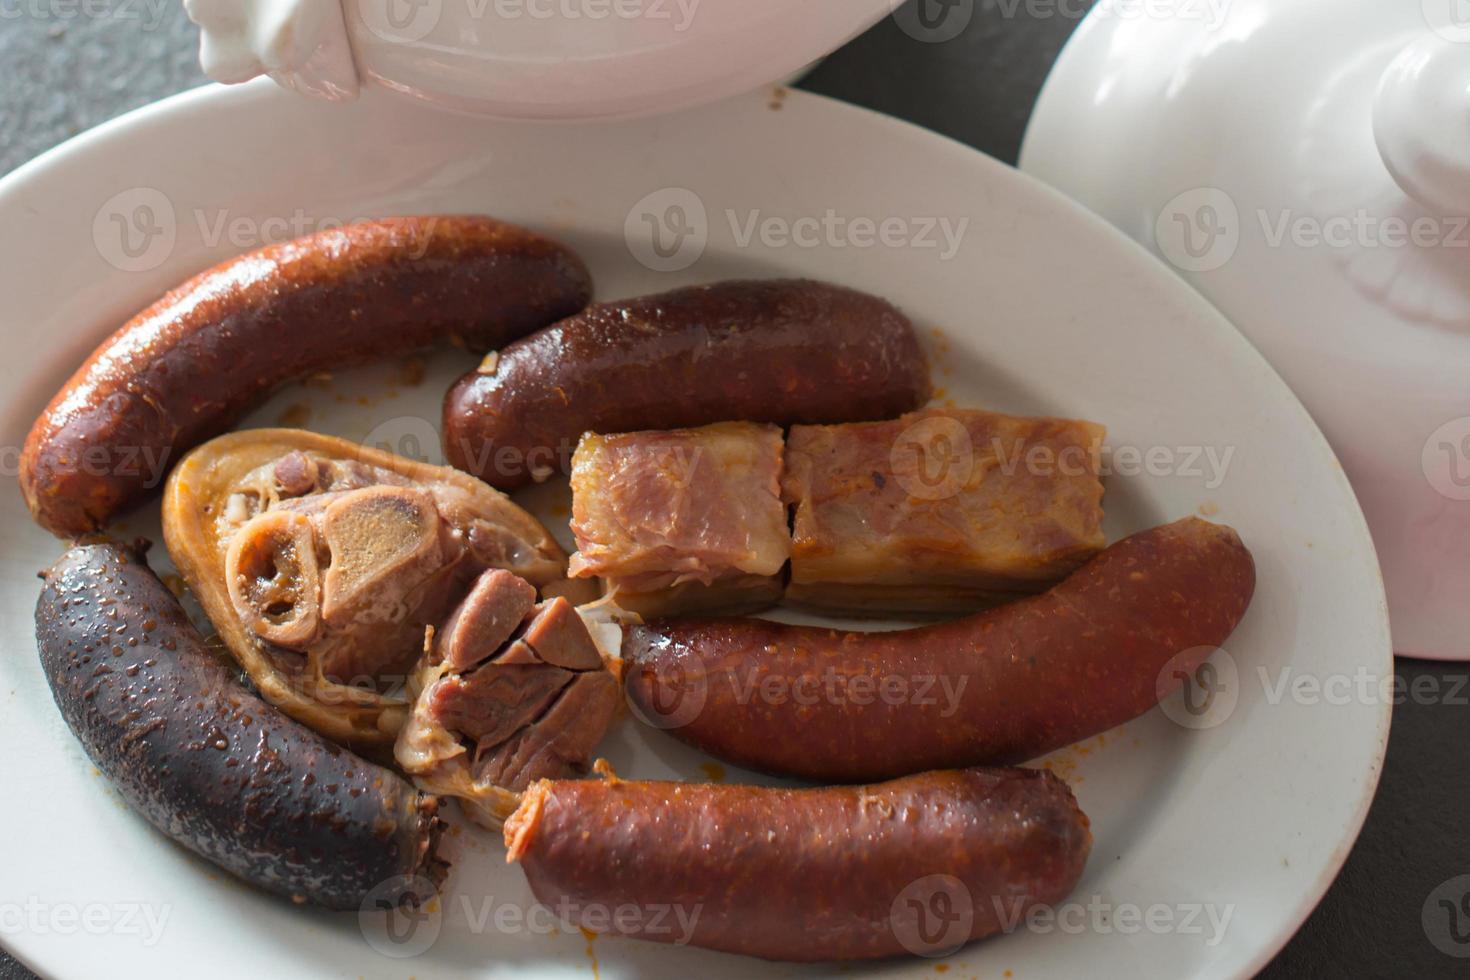 flygfoto över en maträtt med compango, en maträtt med kött, chorizo, sylt och blodkorv att äta tillsammans med fabada, den traditionella måltiden i asturien. hemlagad gastronomi. spanien foto